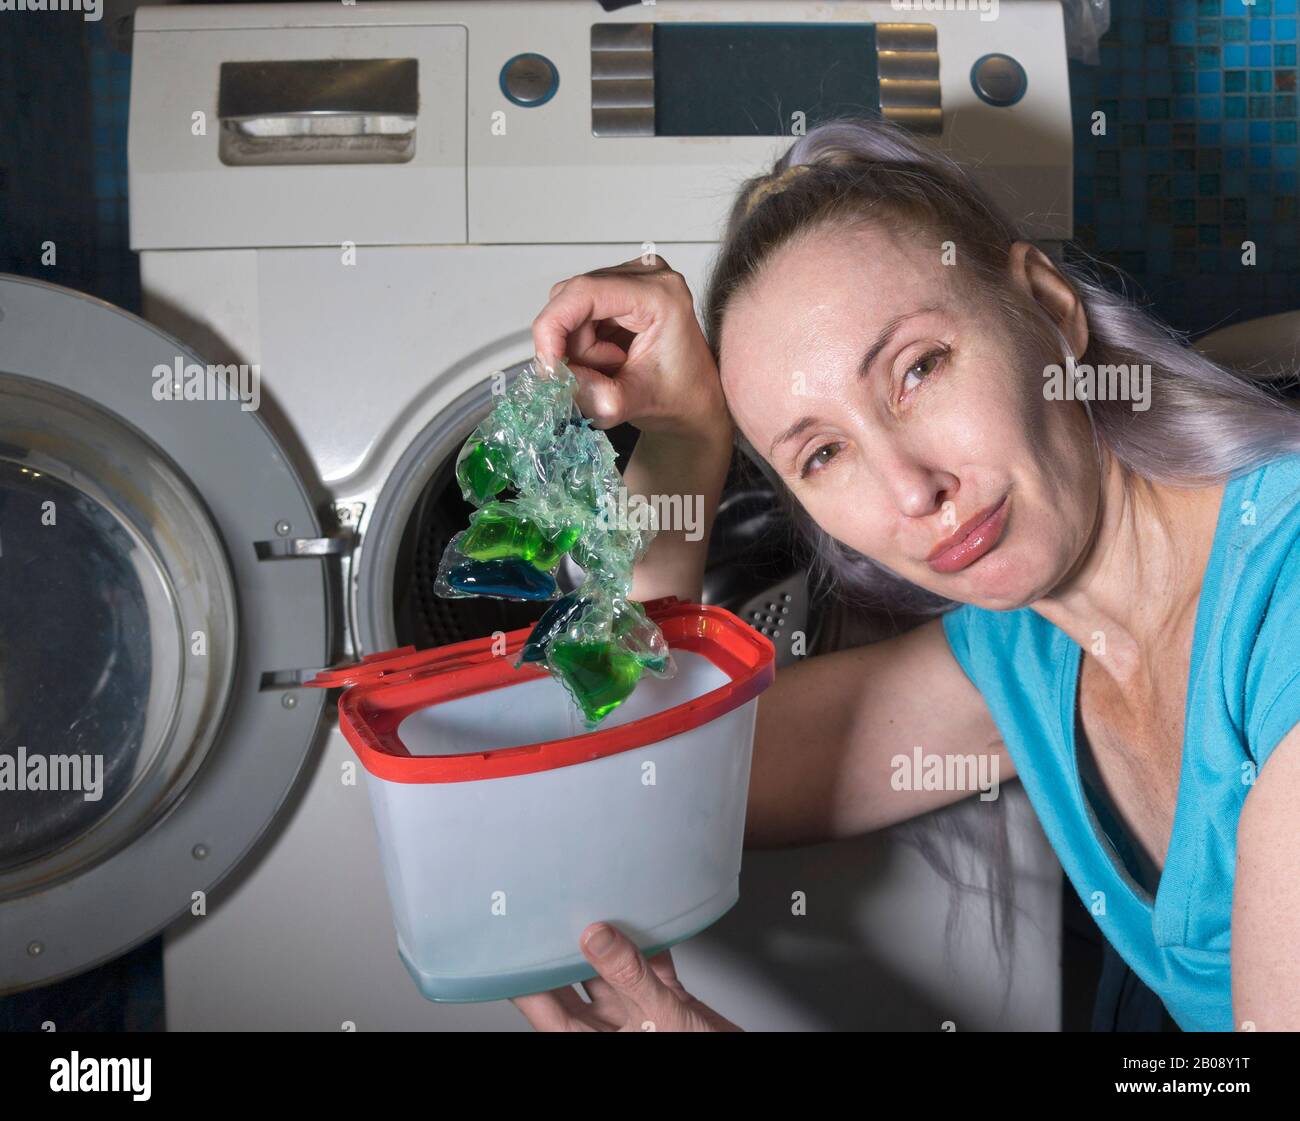 Frau im Badezimmer, neben der Waschmaschine, nimmt das defekte Waschgel in  einen Klumpen aus der Verpackung und weint, Foto von Stockfotografie - Alamy